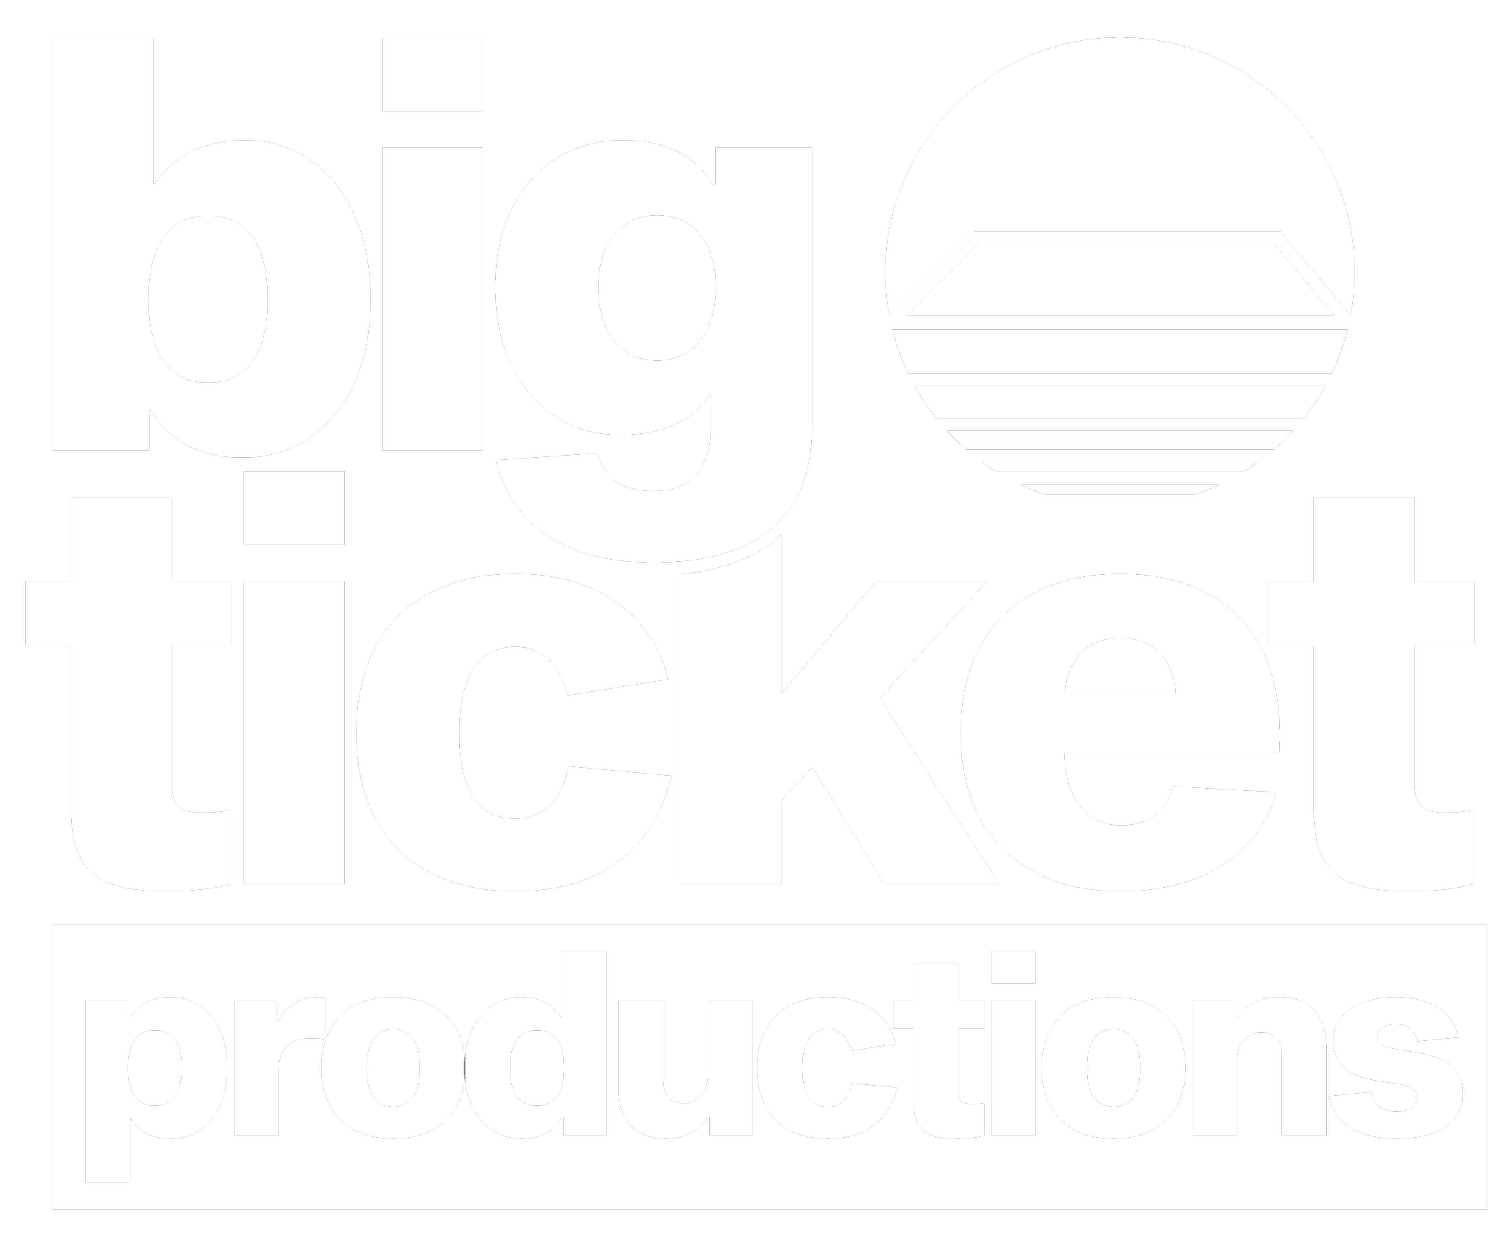 Big Ticket Productions